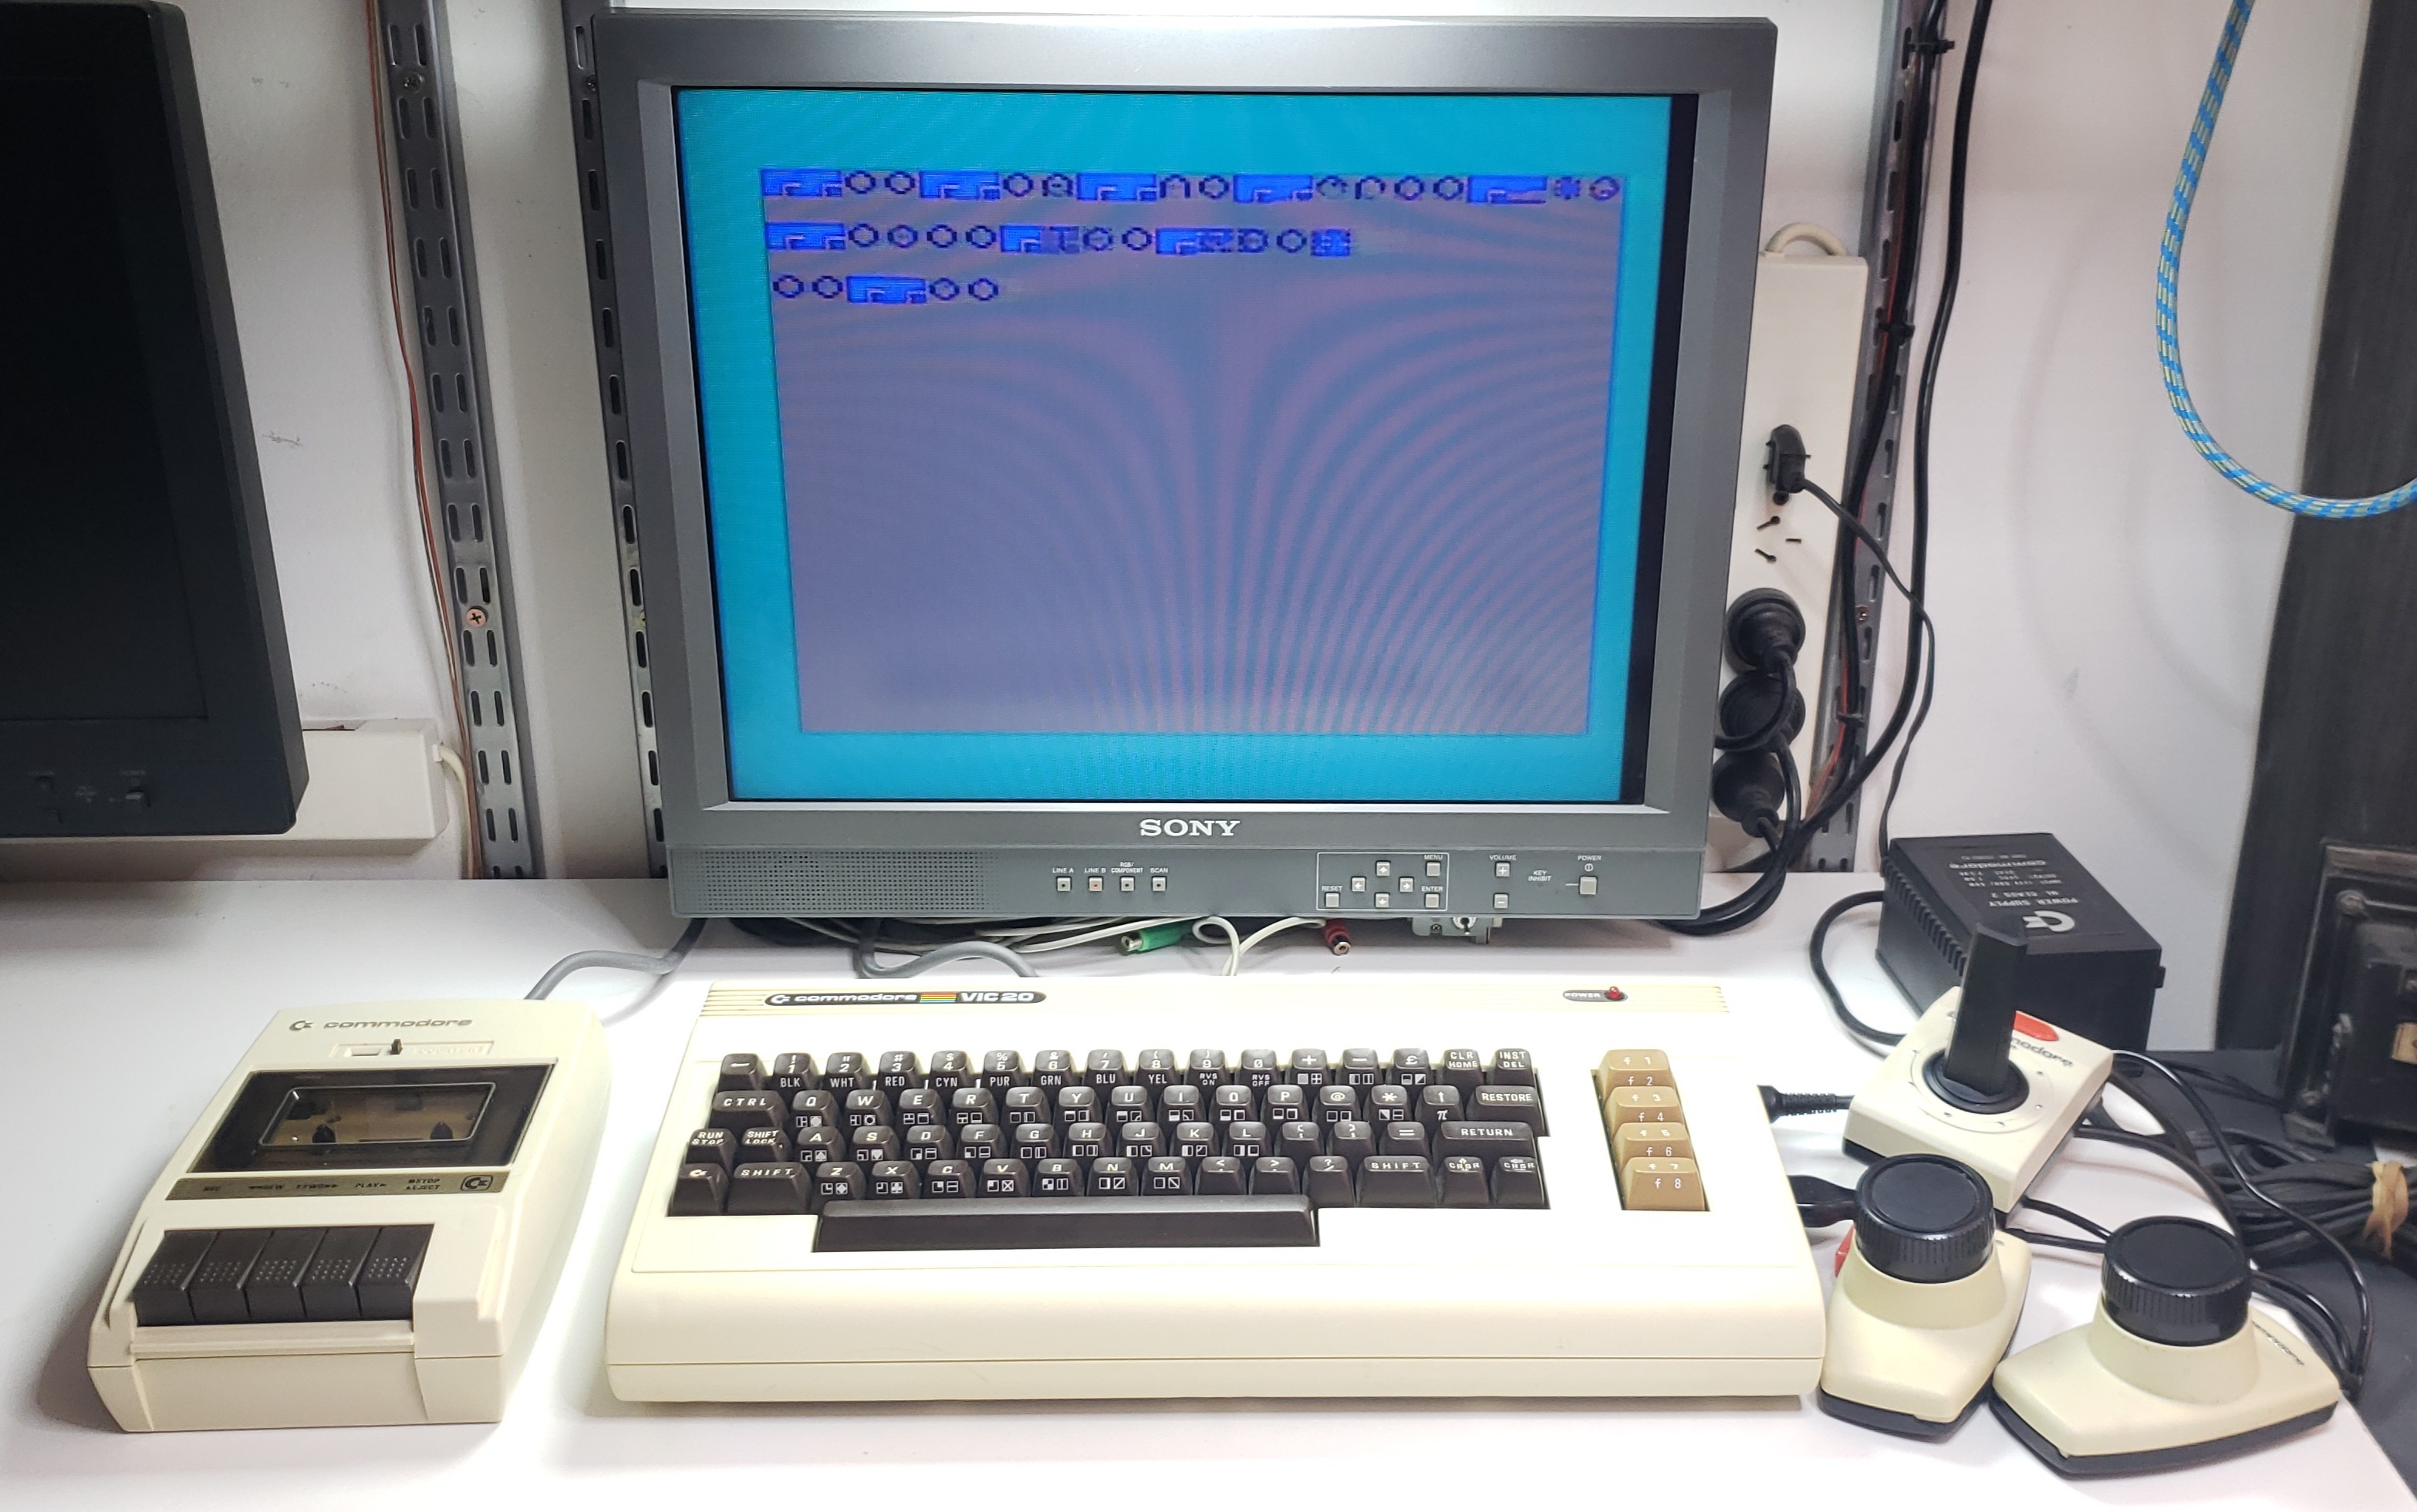 Commodore VIC20: P1268472 - 001